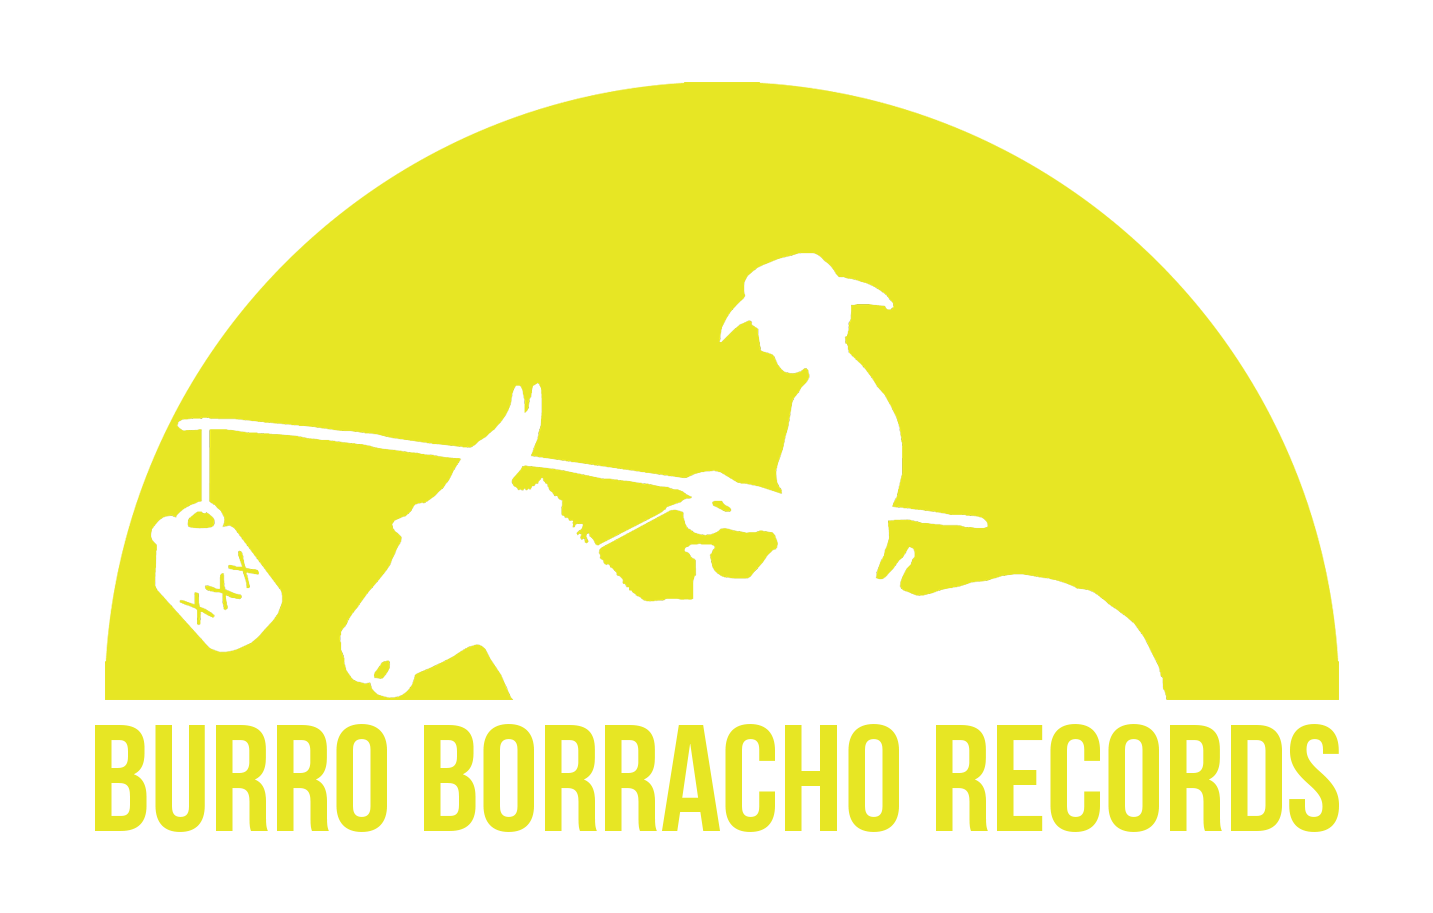 Burro Borracho Records